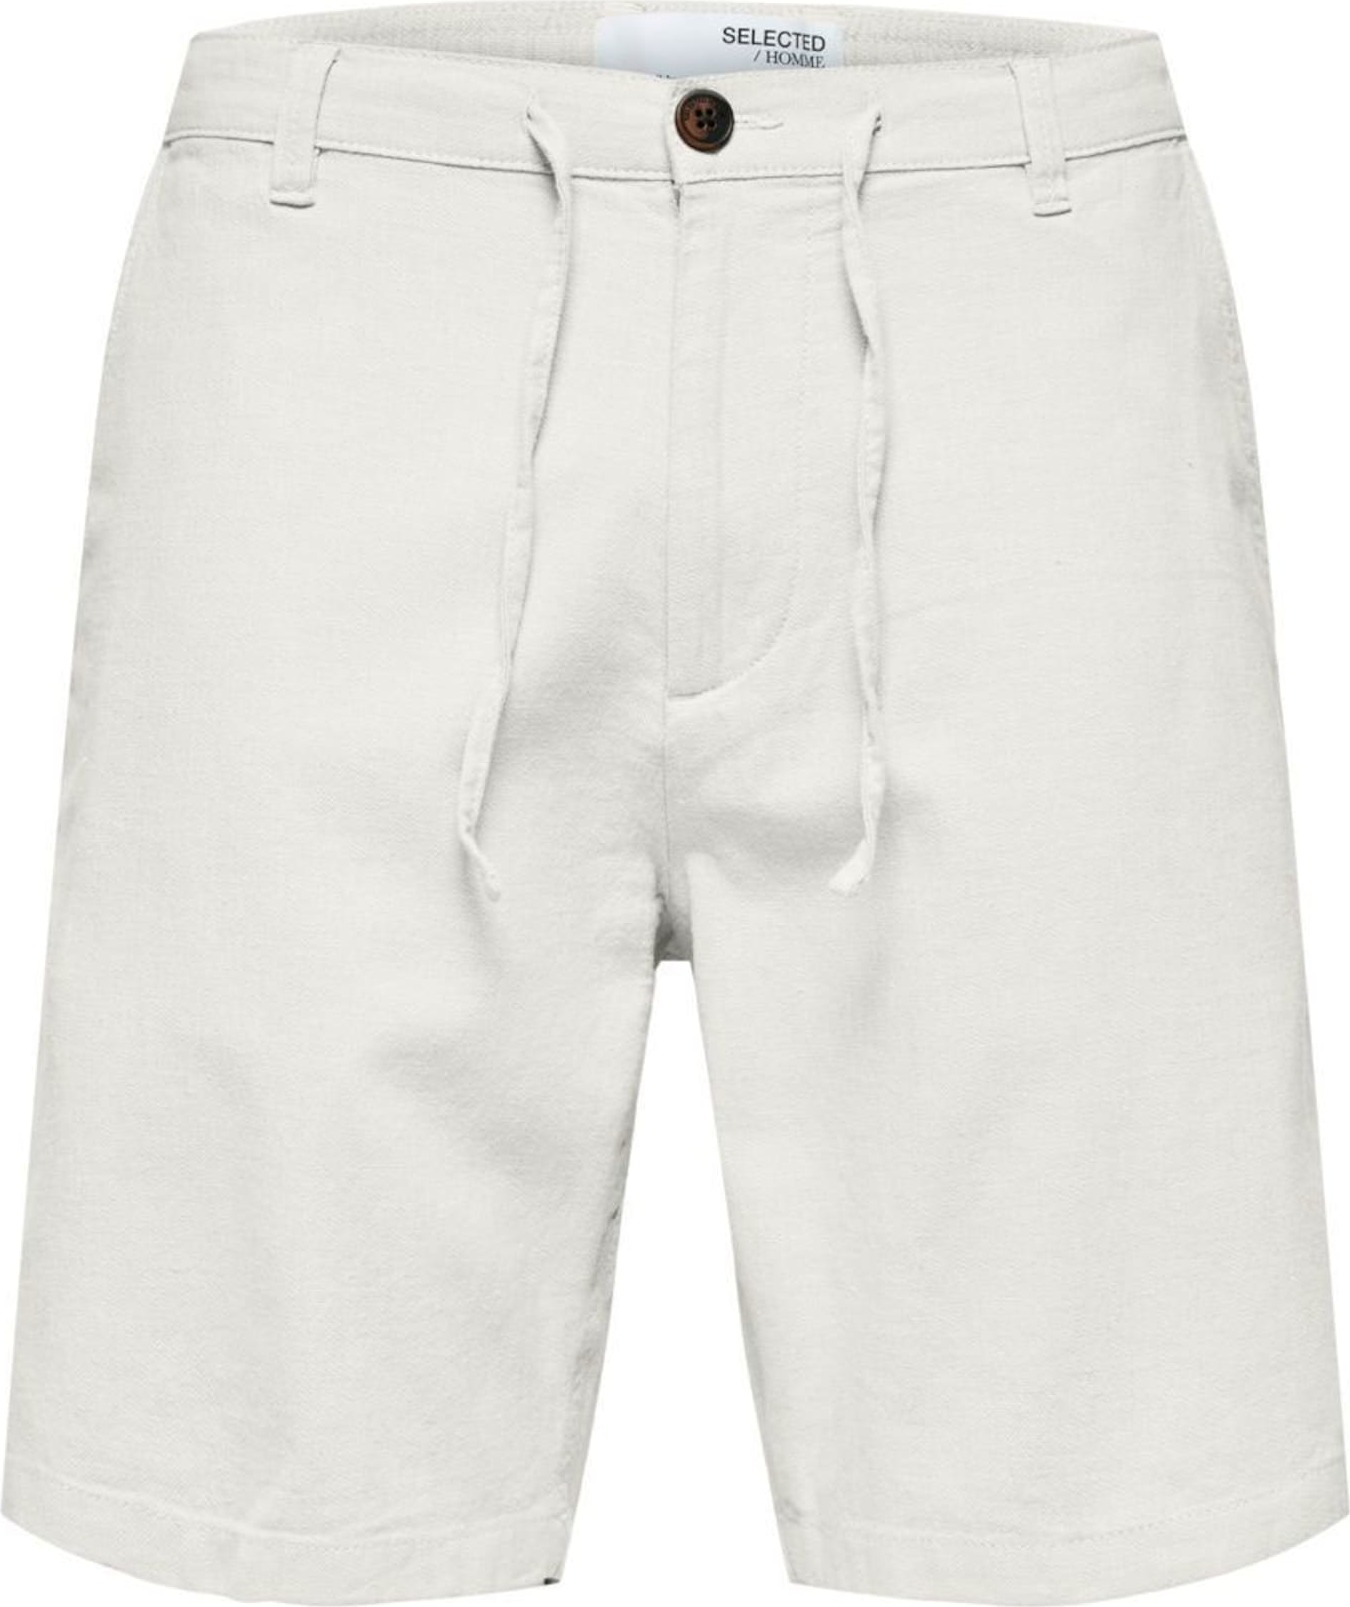 Kalhoty 'Brody' Selected Homme barva bílé vlny